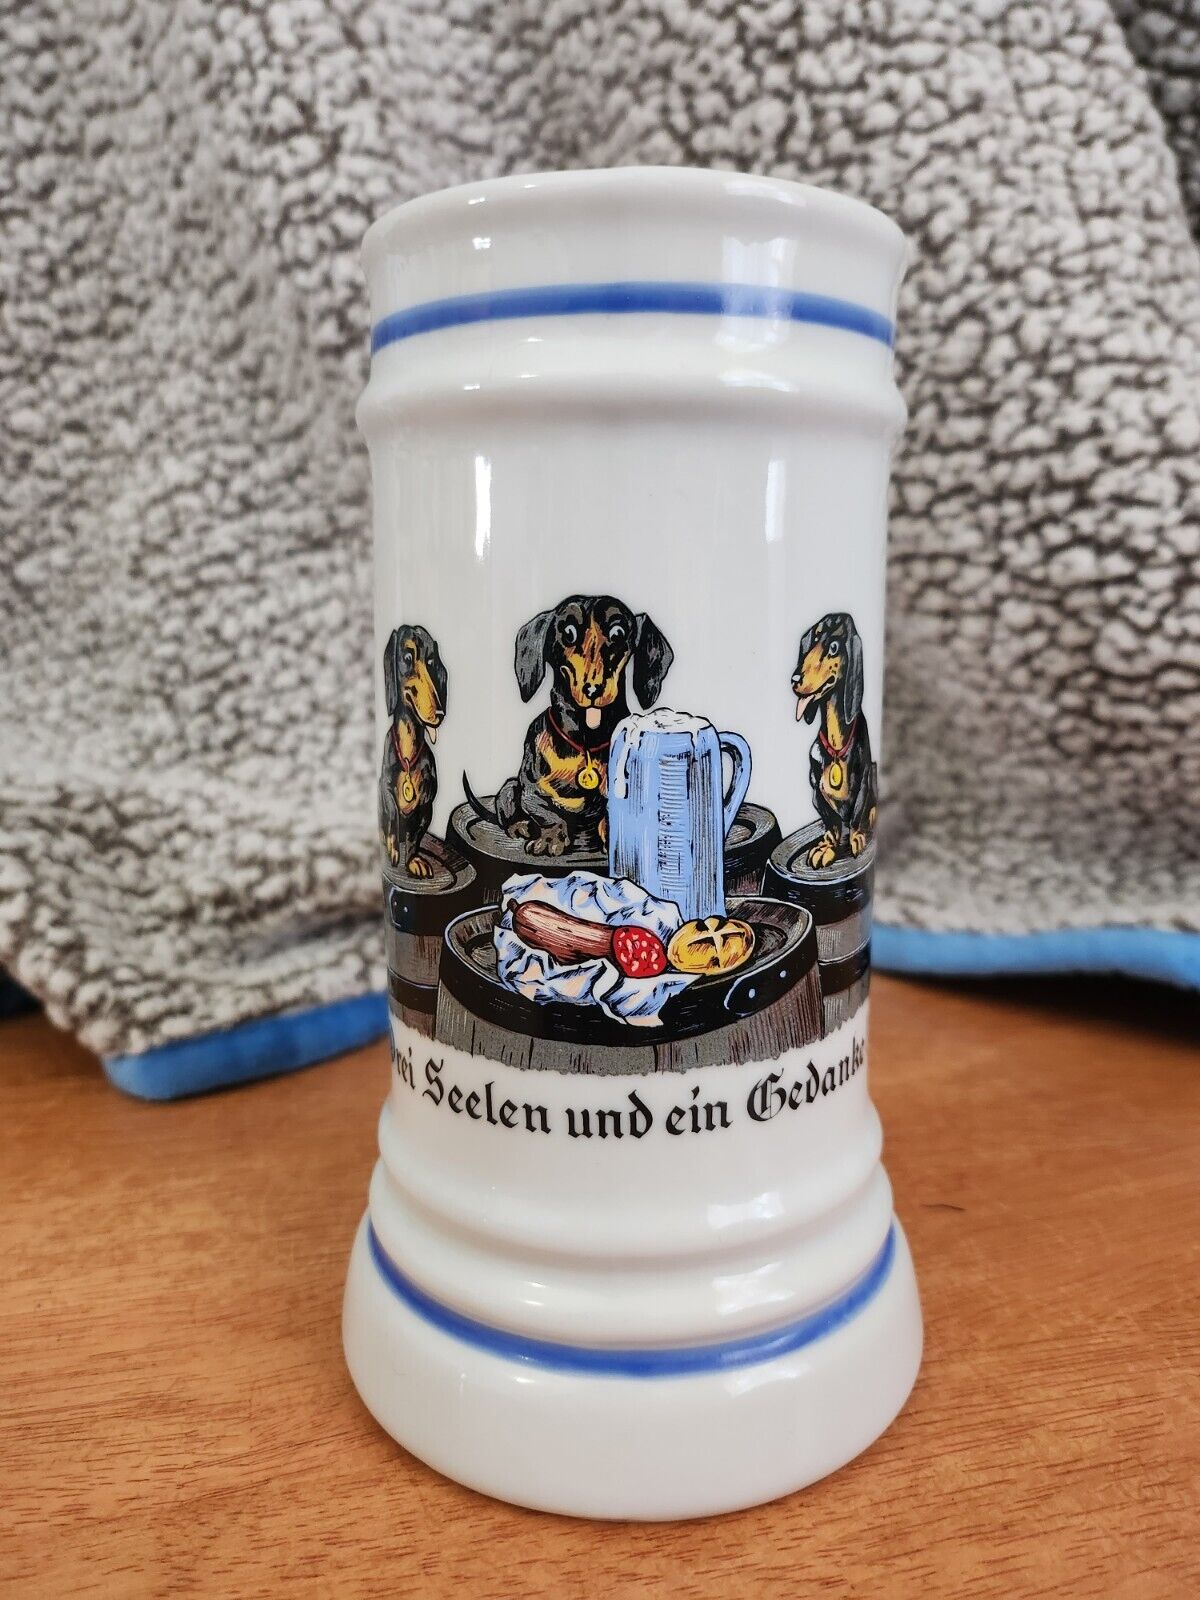 Three Souls And A Thought/ Drei Seelen Und Ein Gedanke German Ceramic Stein Mug